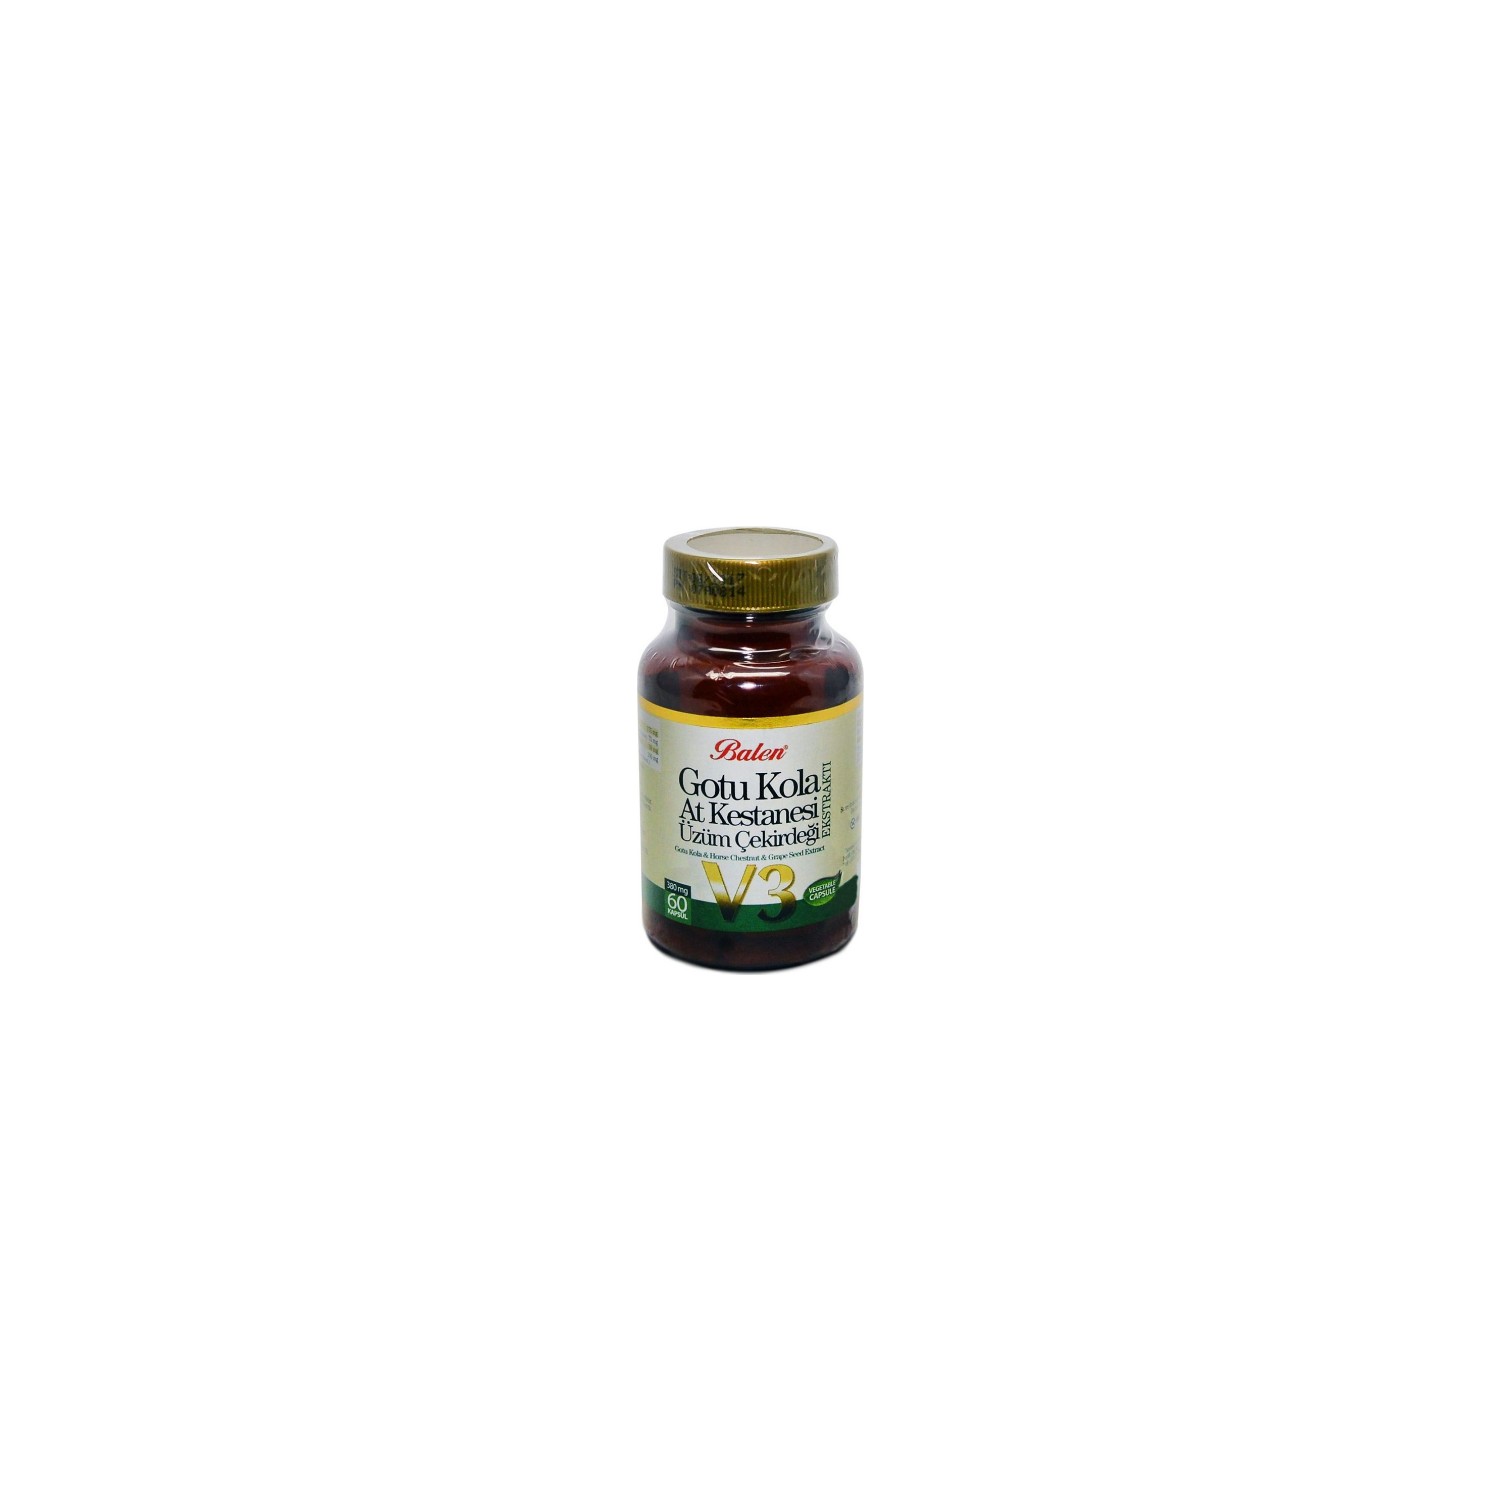 Активная добавка Balen Gotu Kola-Horse Chestnut Grape Seed, 355 мг, 60 капсул solgar готу кола капсулы 100 шт